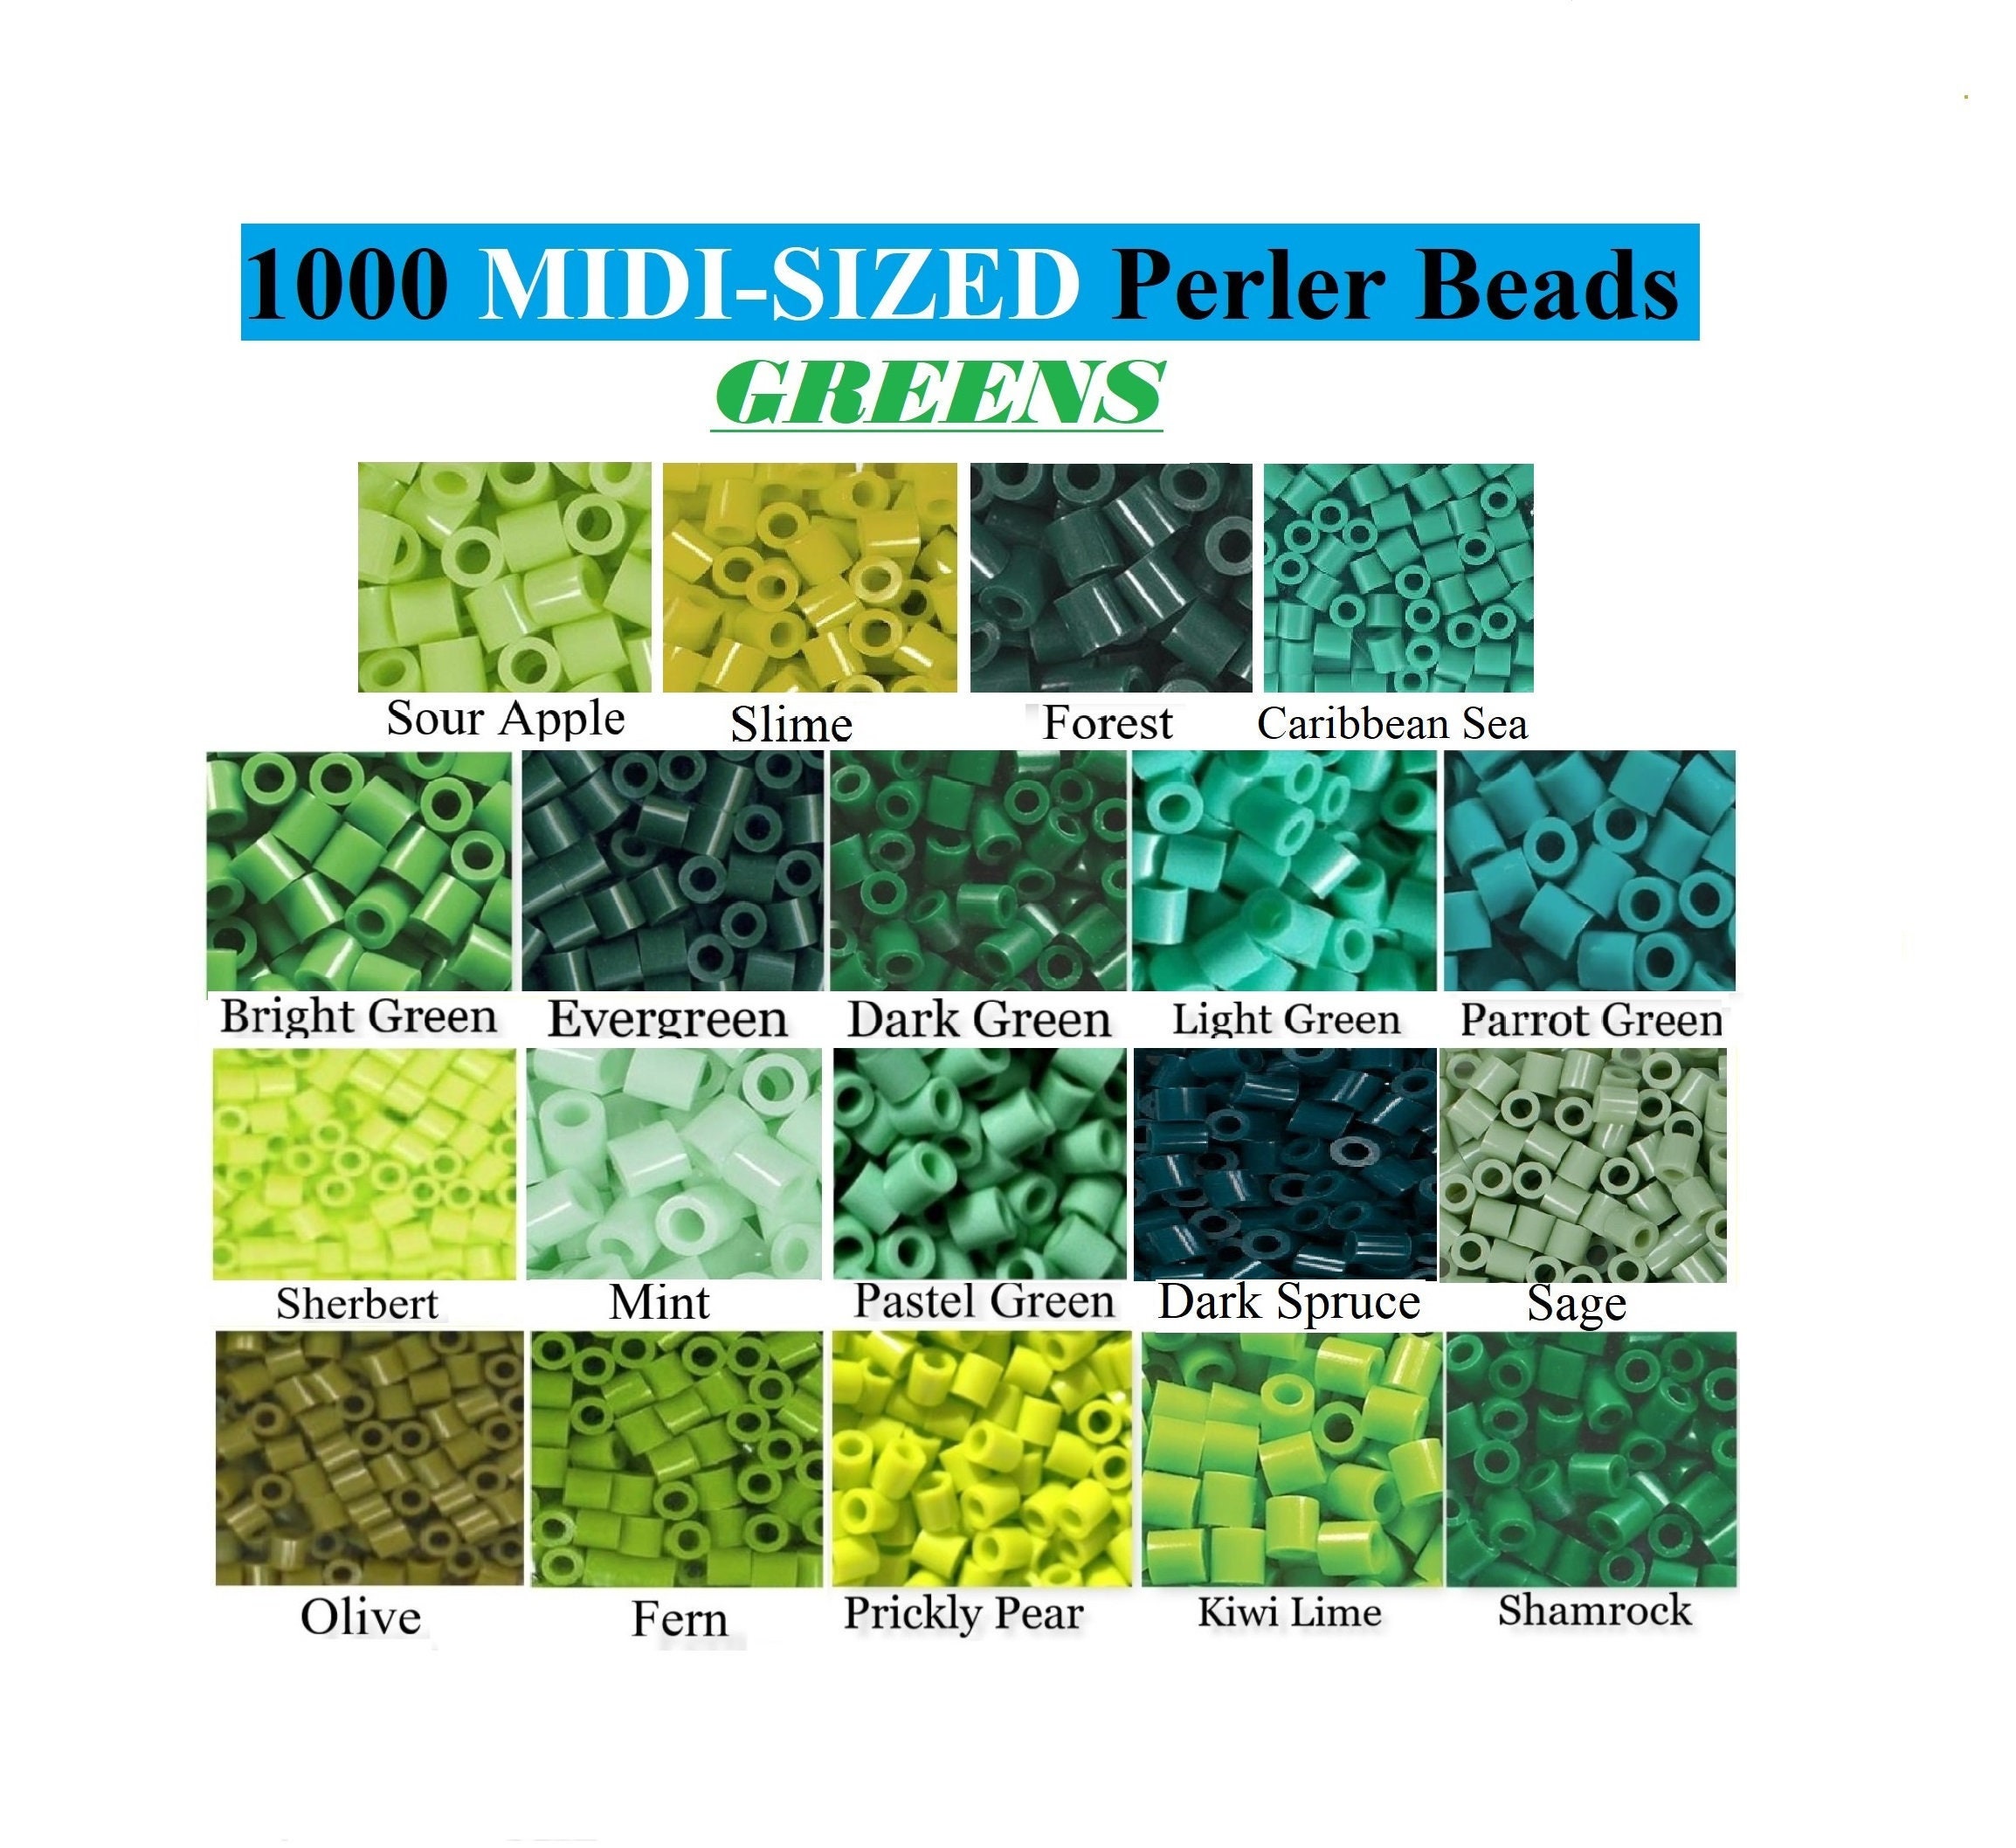 1000 Perler Beads, Perler Melting Beads, Bulk Perler Beads, Perler Bead  Lot, Yellow Perler Beads, White Beads, Melting Beads, Perler Brand 